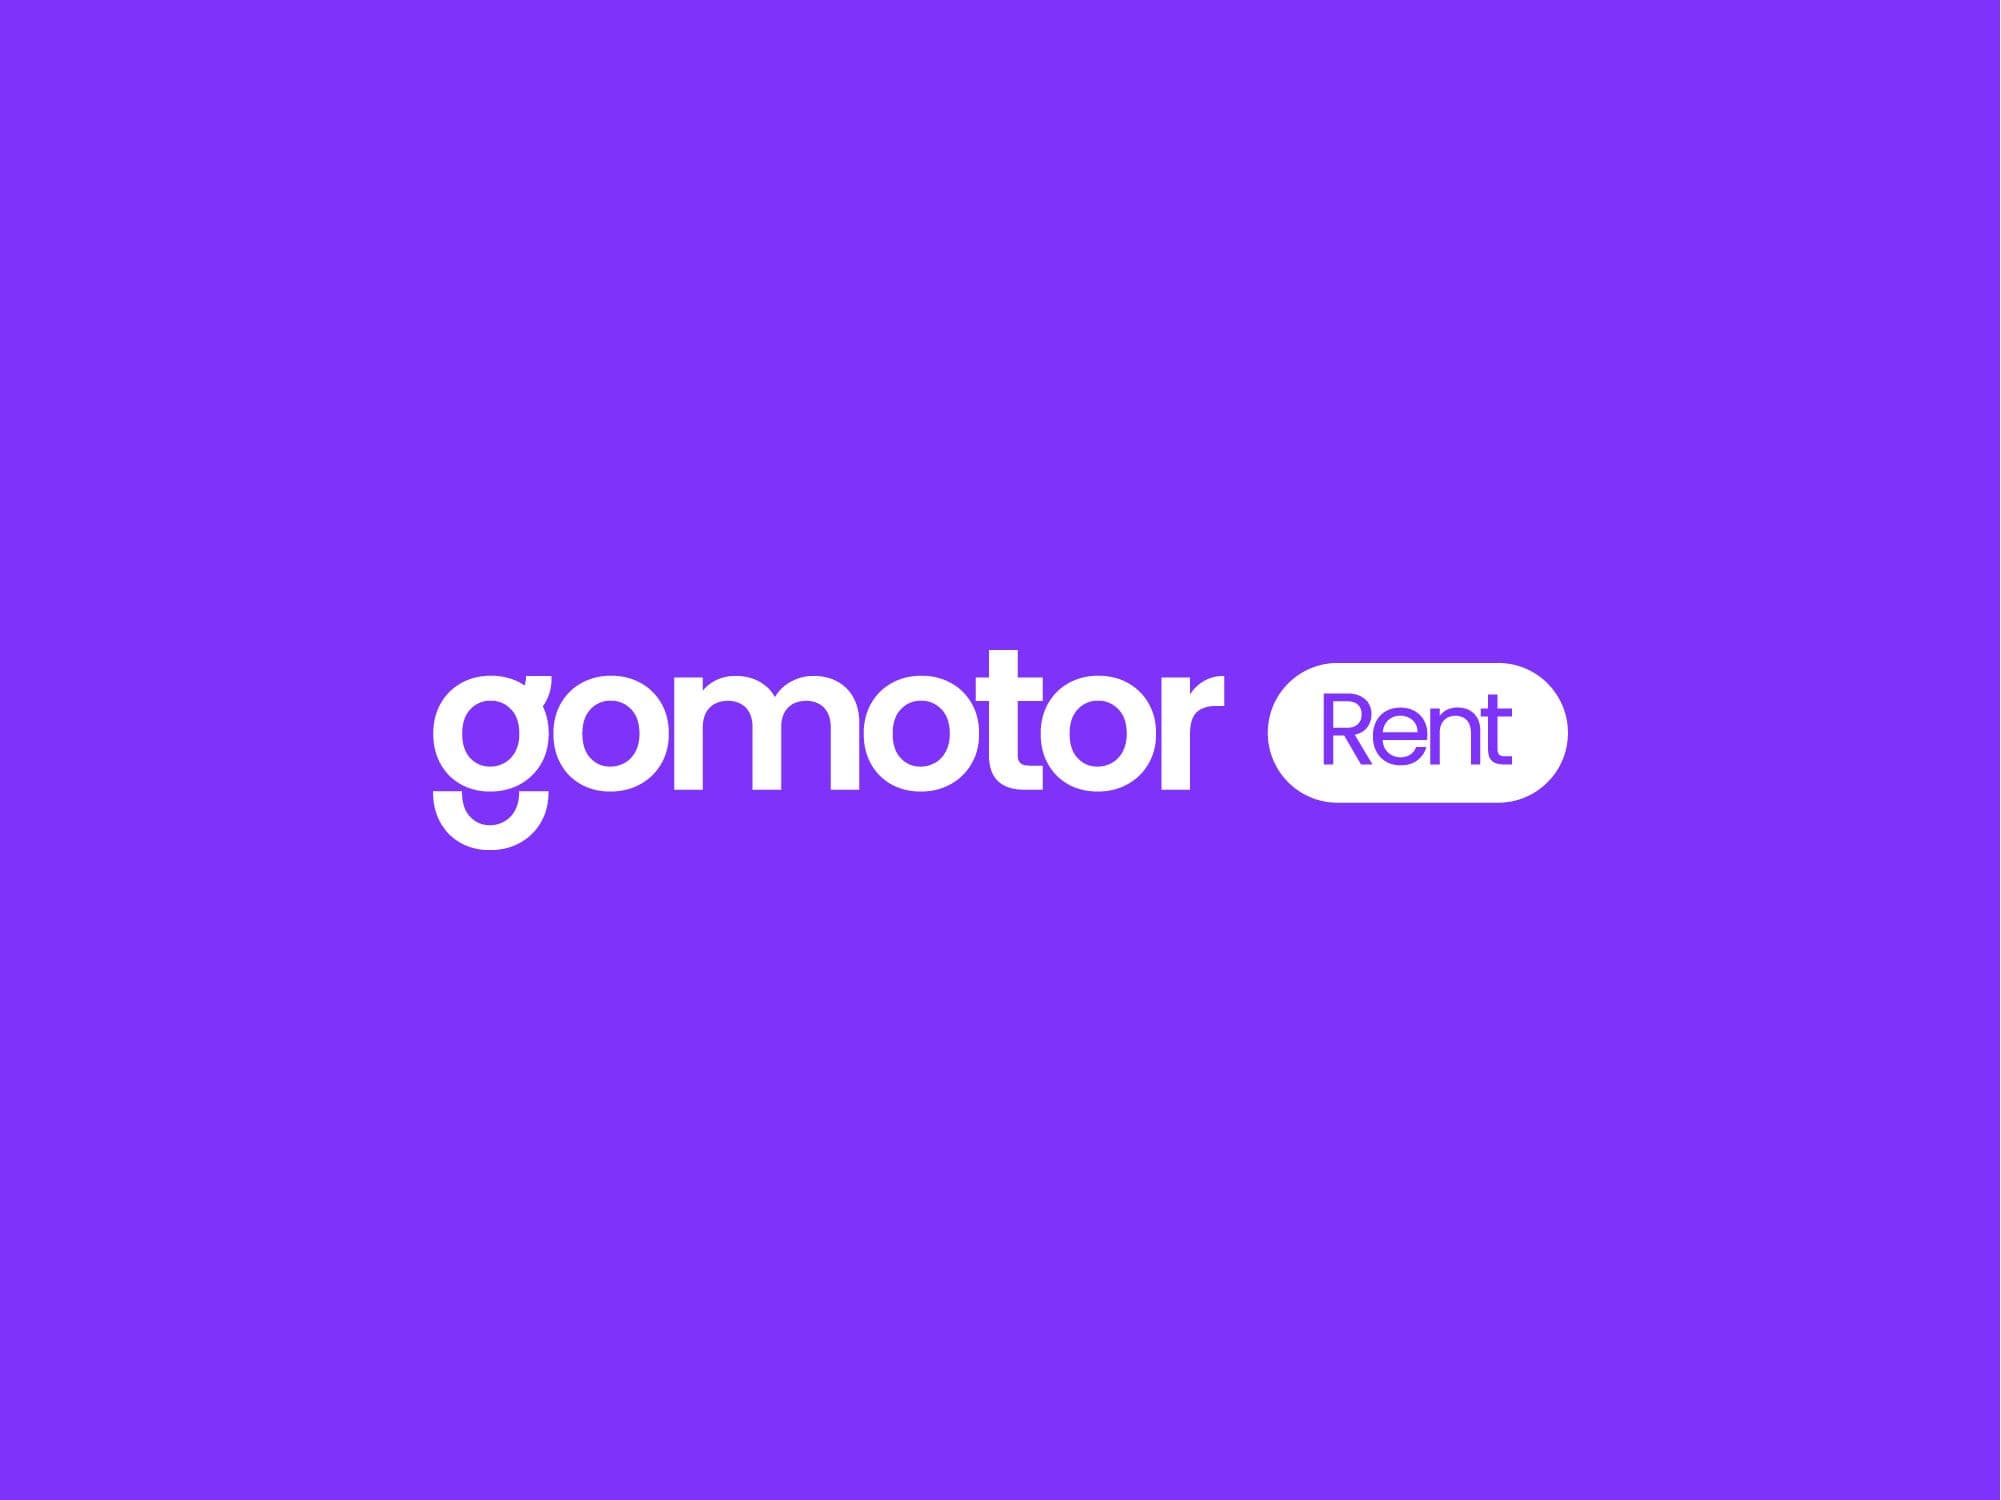 Llega nuestro servicio de alquiler de coches y furgonetas: Gomotor Rent 